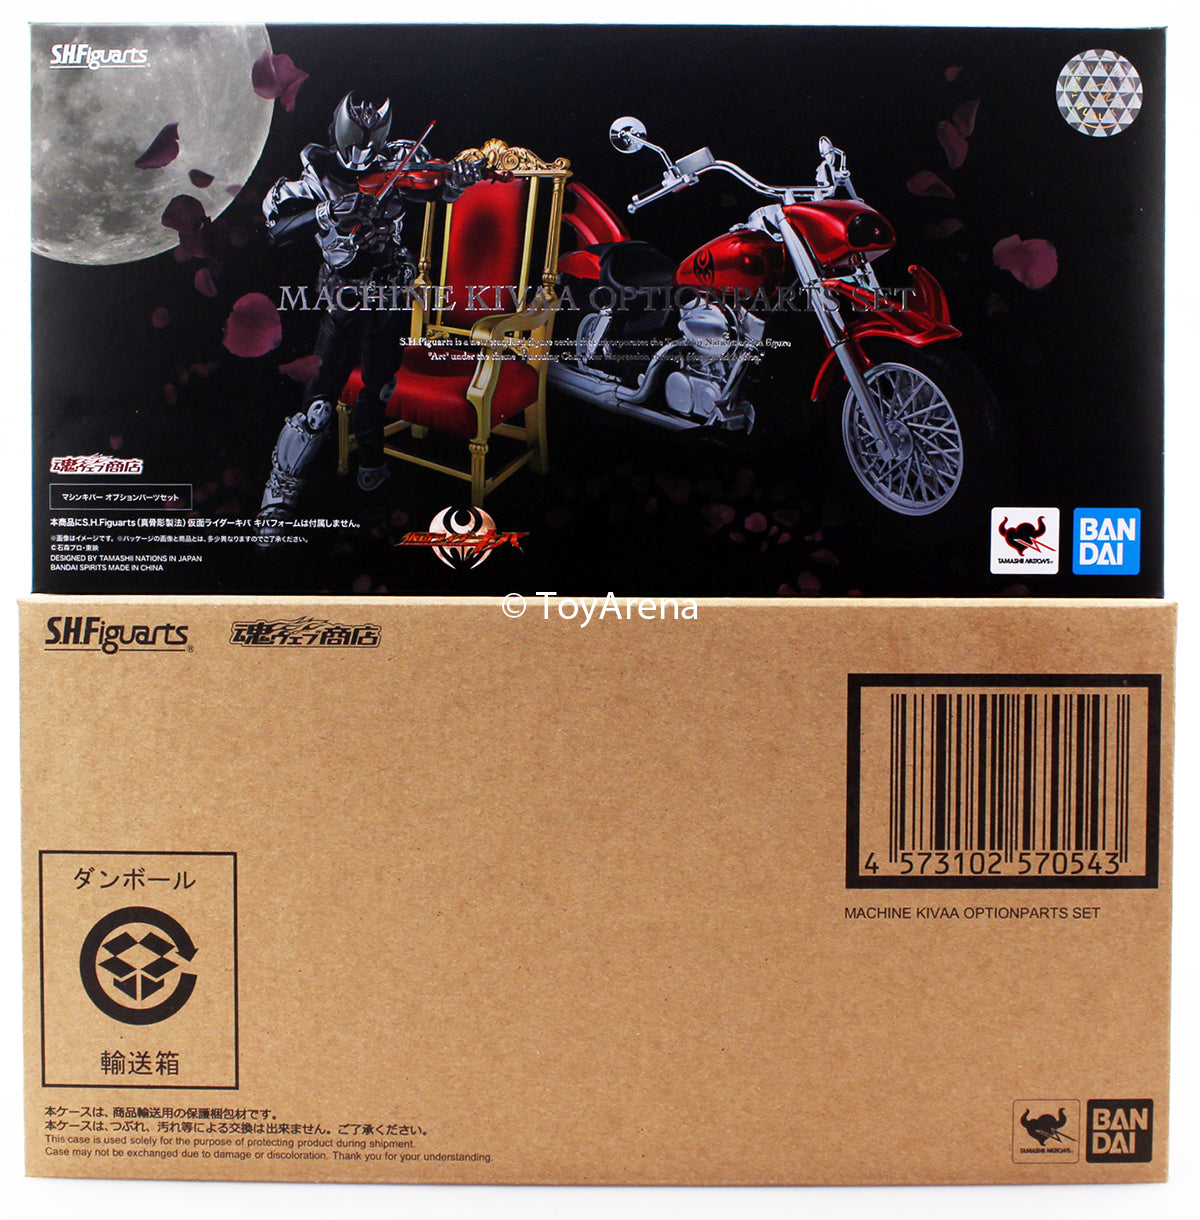 S.H. Figuarts Kamen Rider Machine Kivaa Option Parts Set Bike Tamashii Web Exclusive